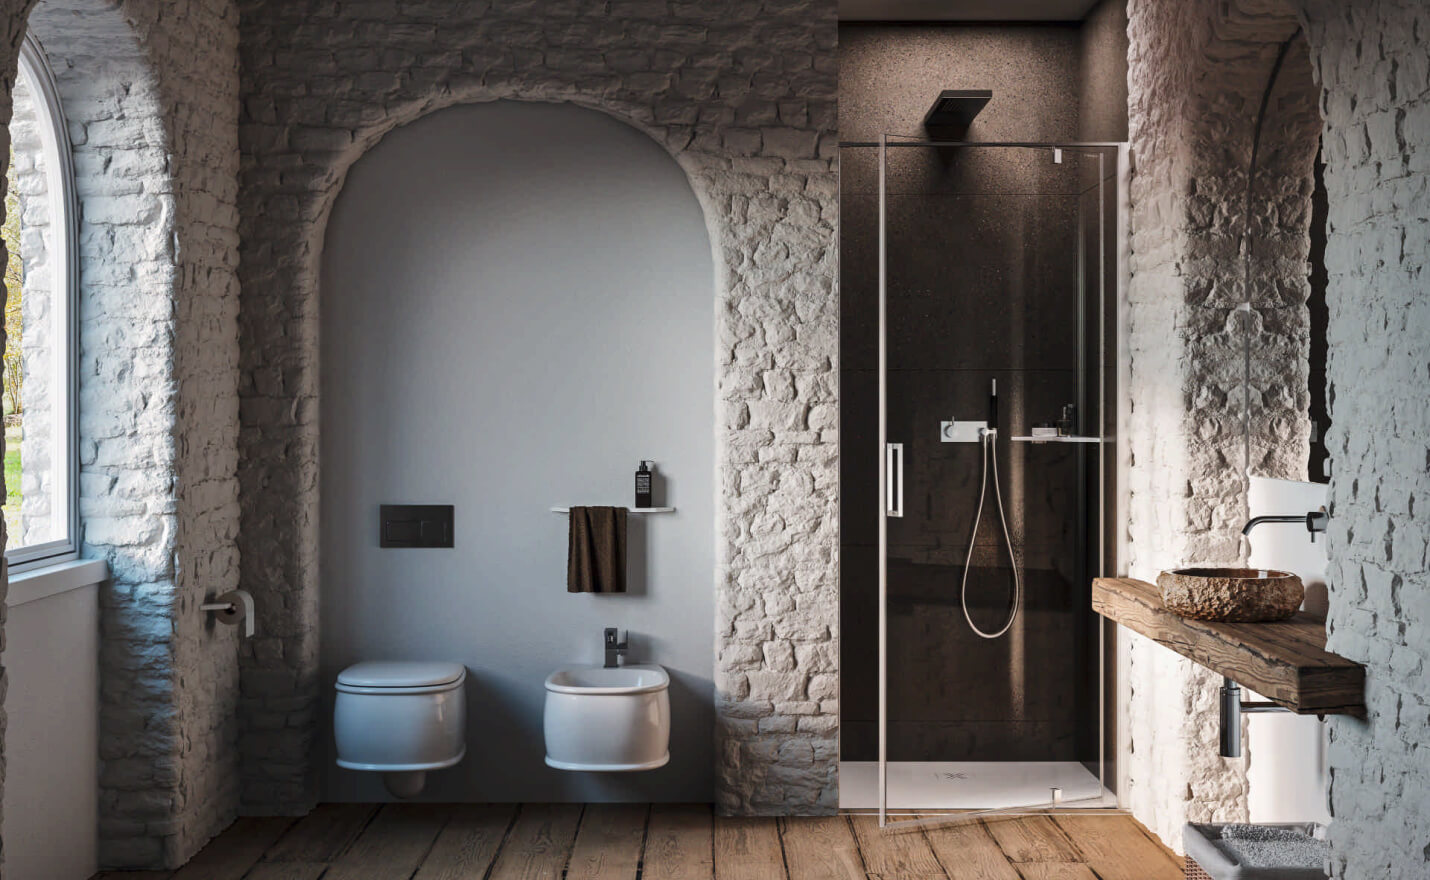 Cabina doccia in nicchia con anta pivotante e vetro trasparente senza profili a vista in un ambiente bagno rustico